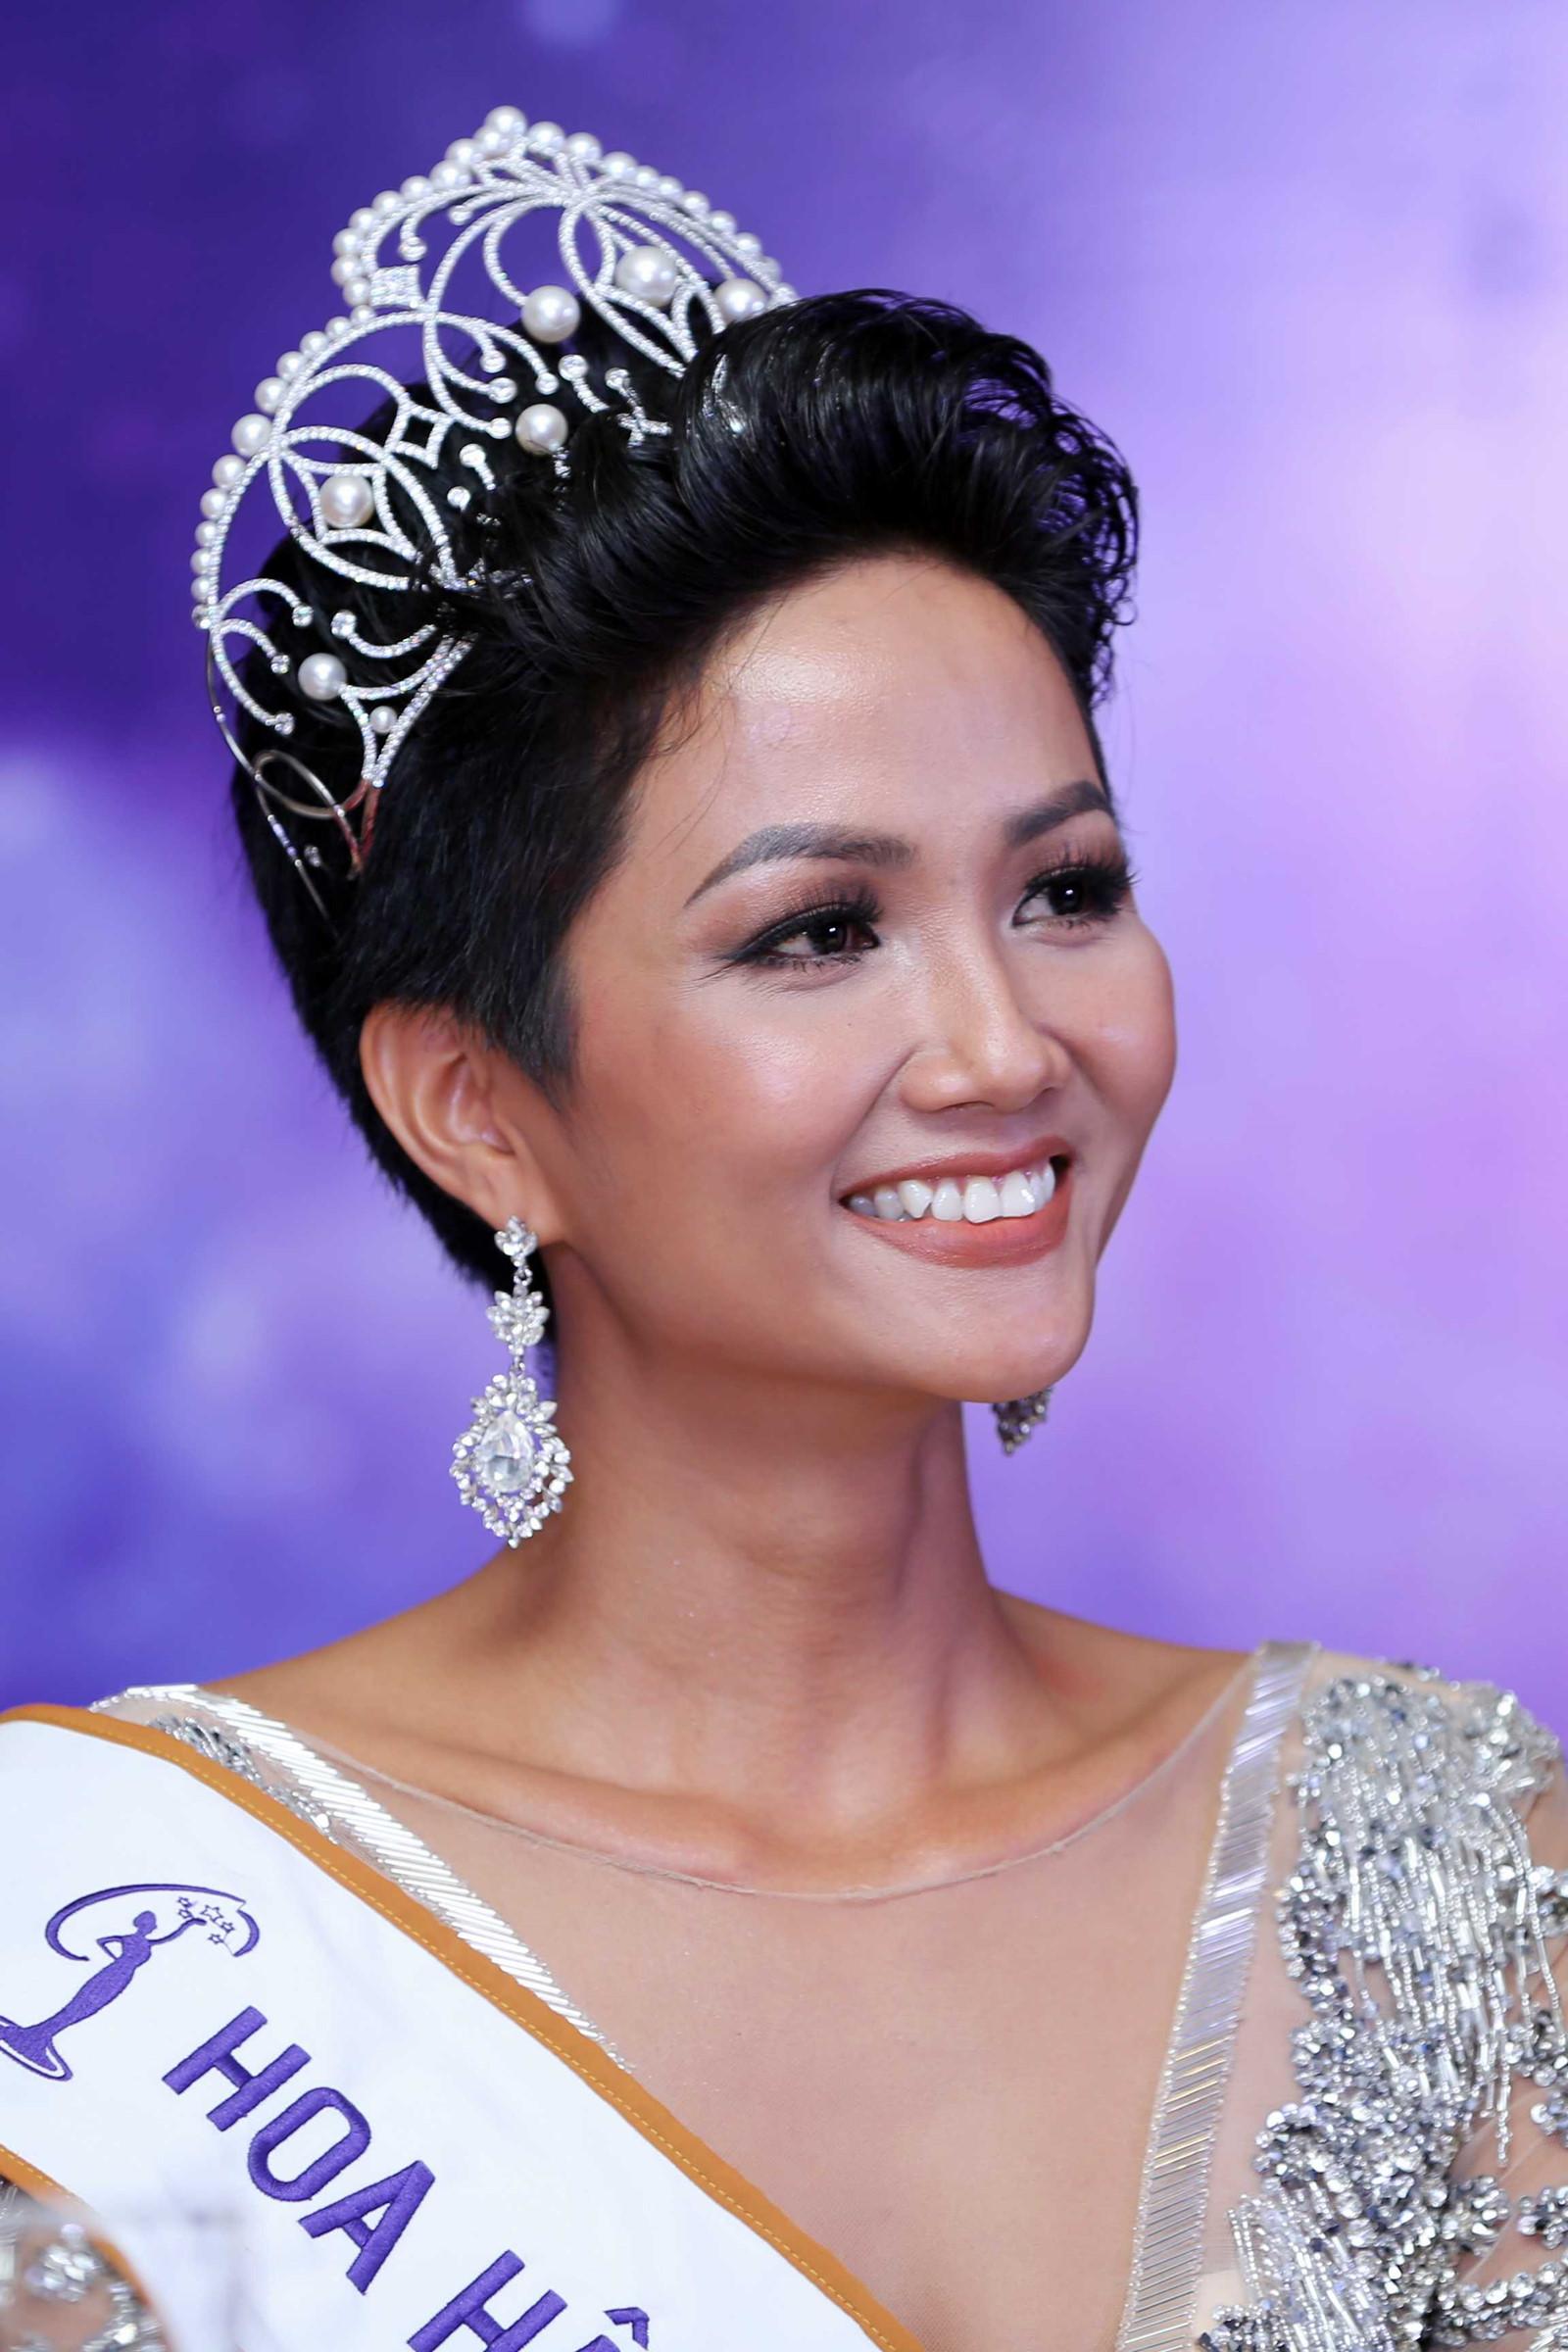 CHUYỆN ÍT NGƯỜI BIẾT: Hoa hậu HHen Niê từng làm ô sin, mỗi bữa ăn chỉ 10 ngàn đồng-1